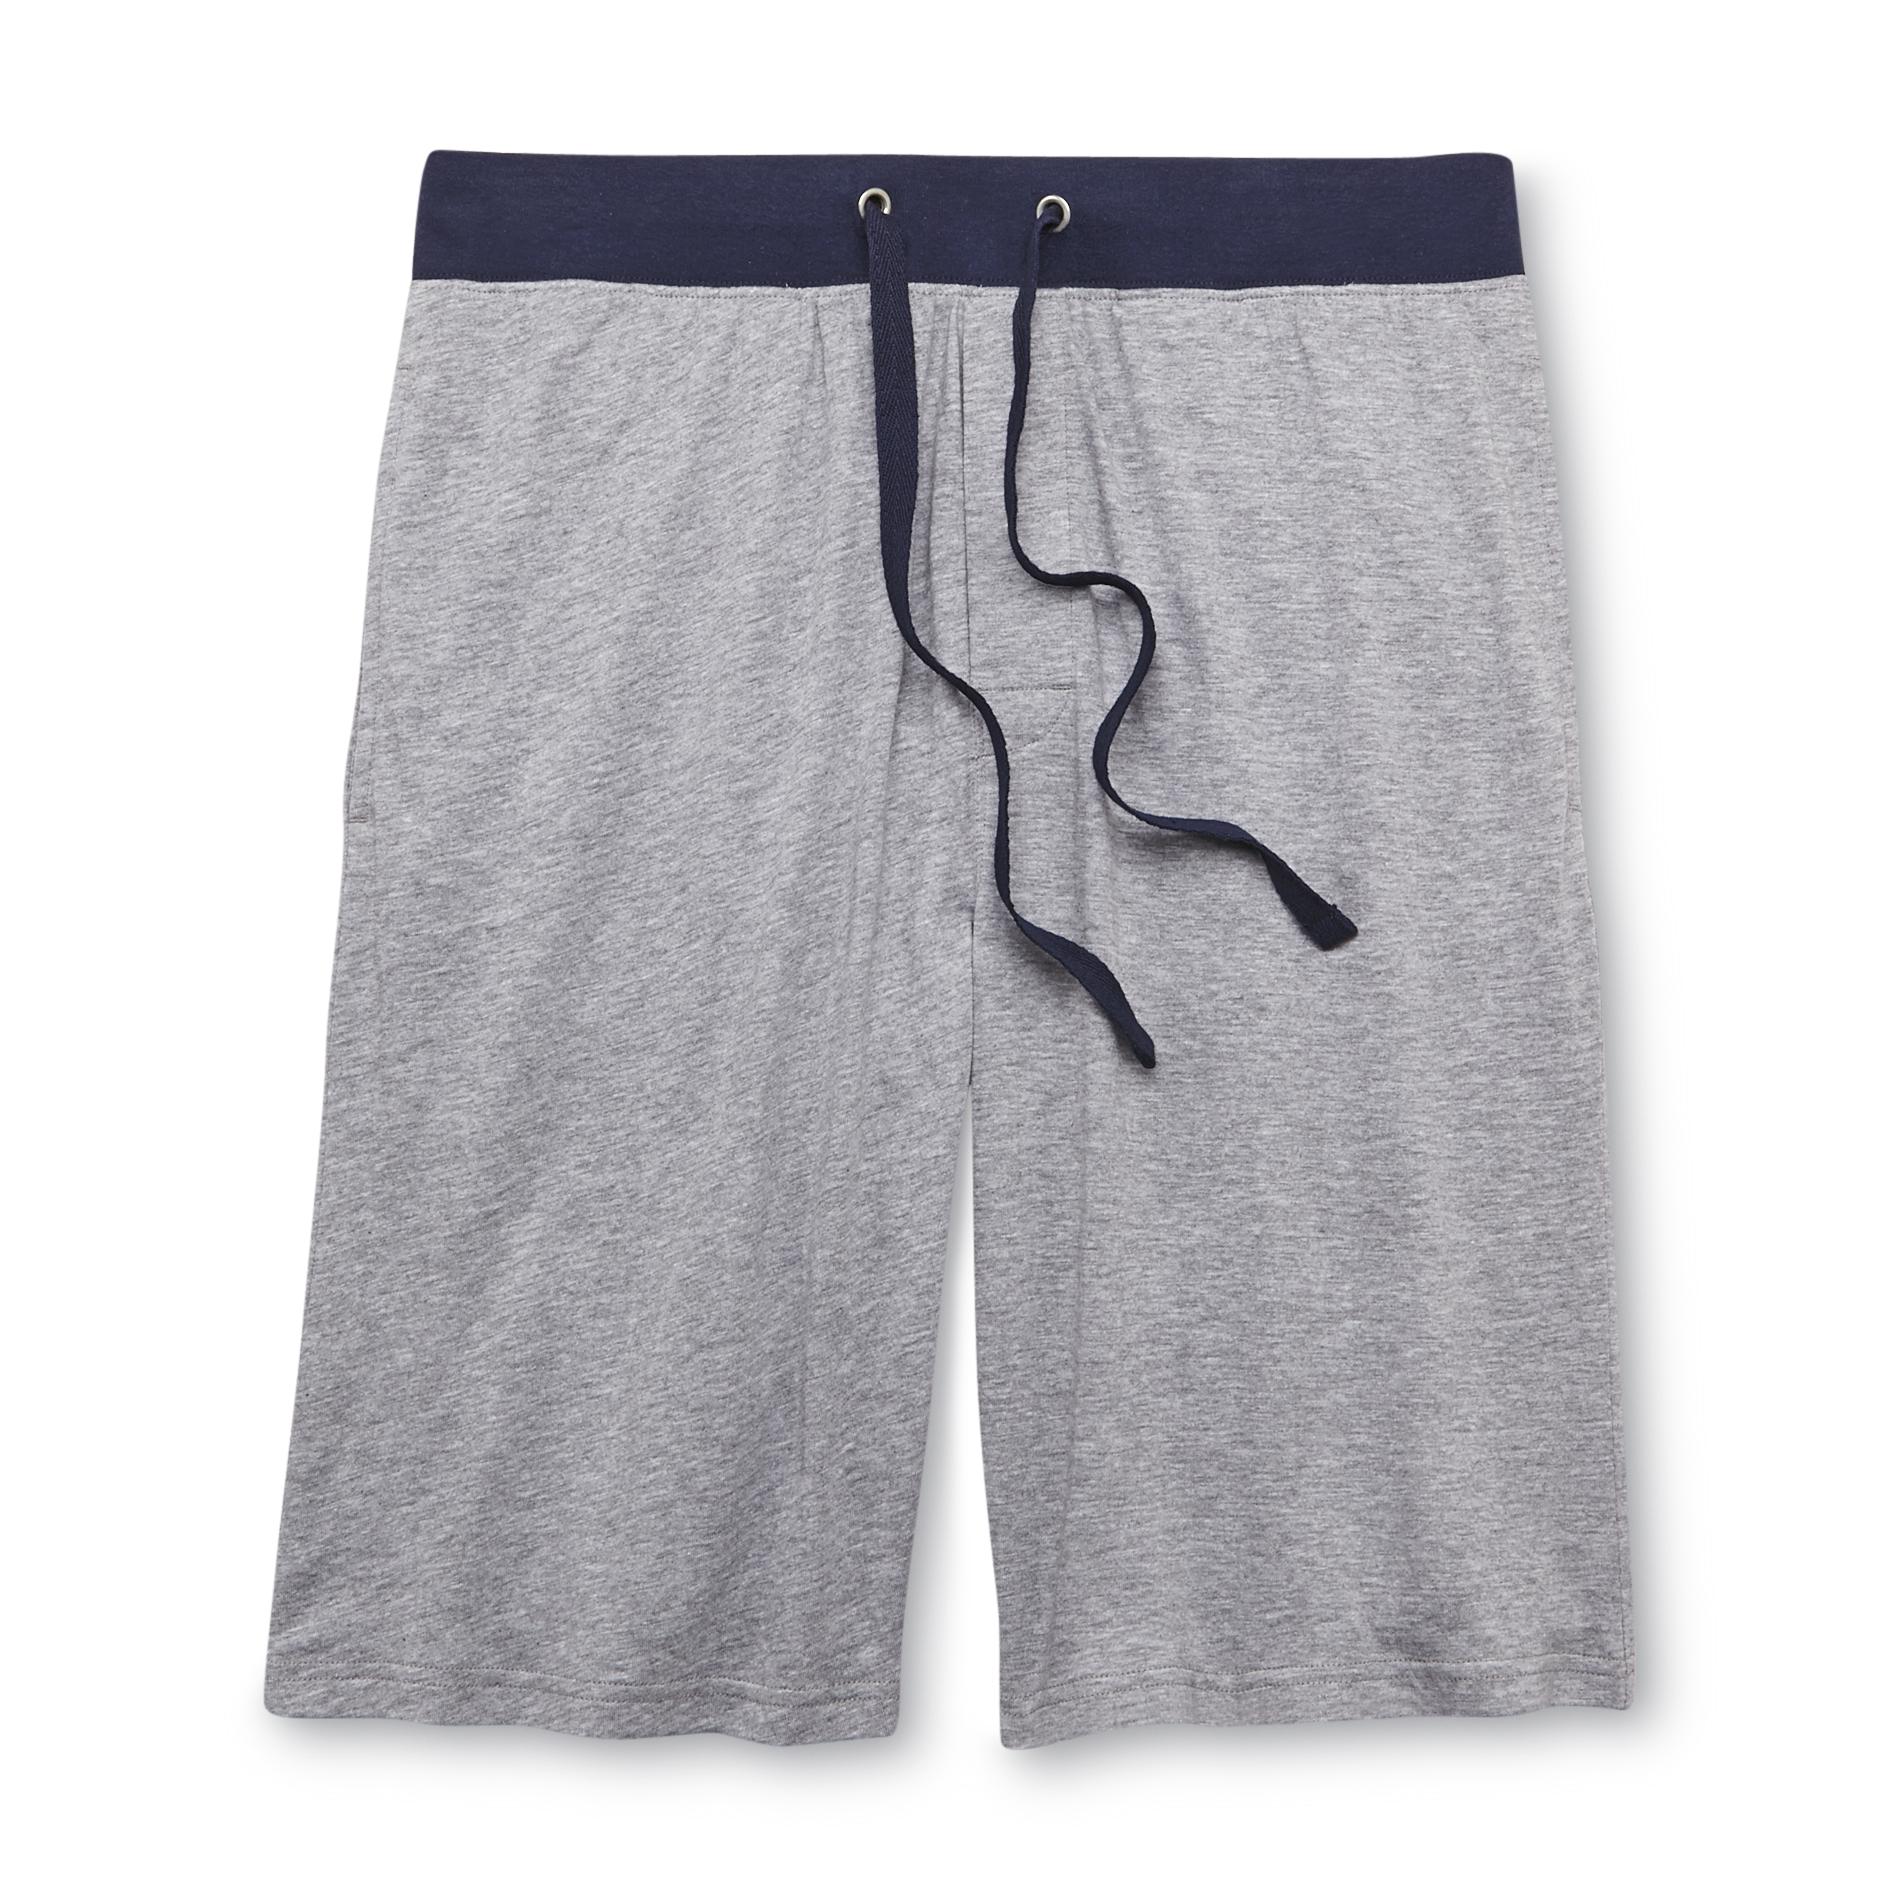 Covington Men's Knit Lounge Shorts